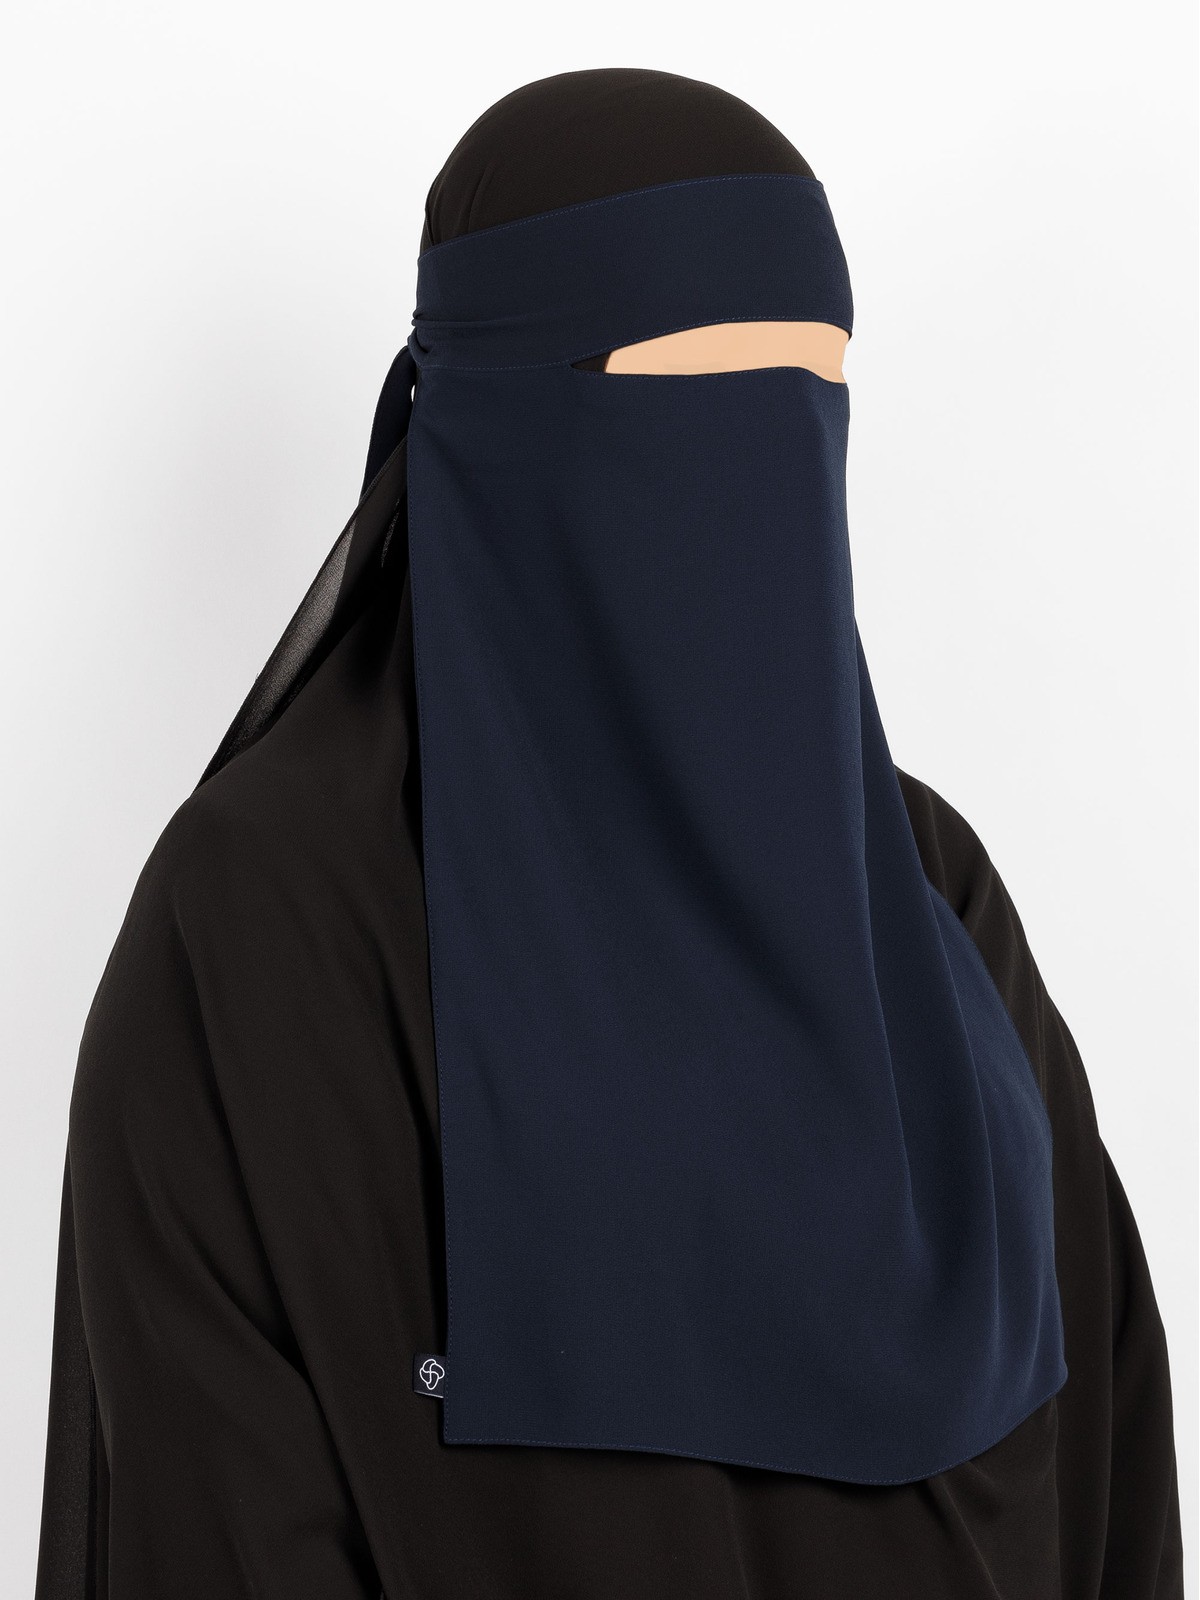 Sunnah Style - Pebble One Layer Niqab (Cedar)